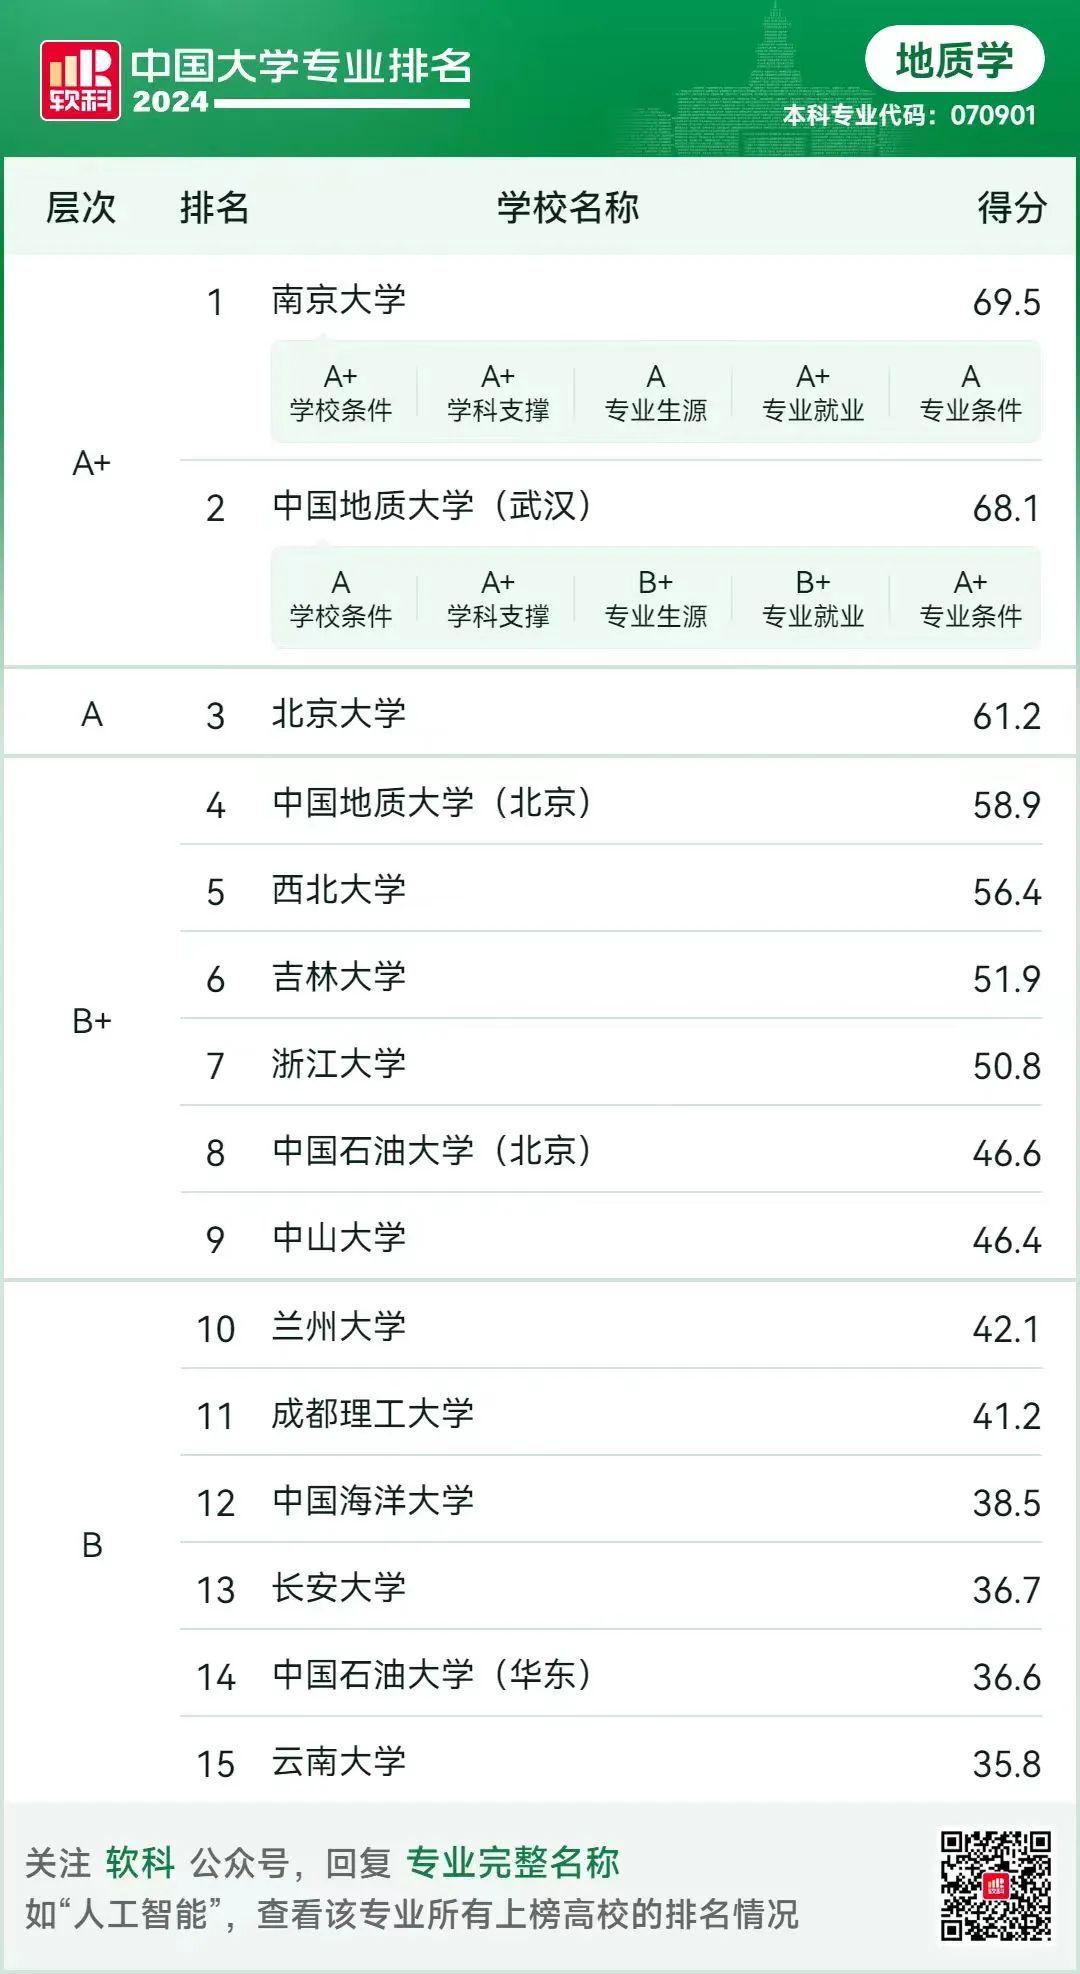 与去年相比,今年,南京大学的地质学专业超过中国地质大学(武汉)夺得了